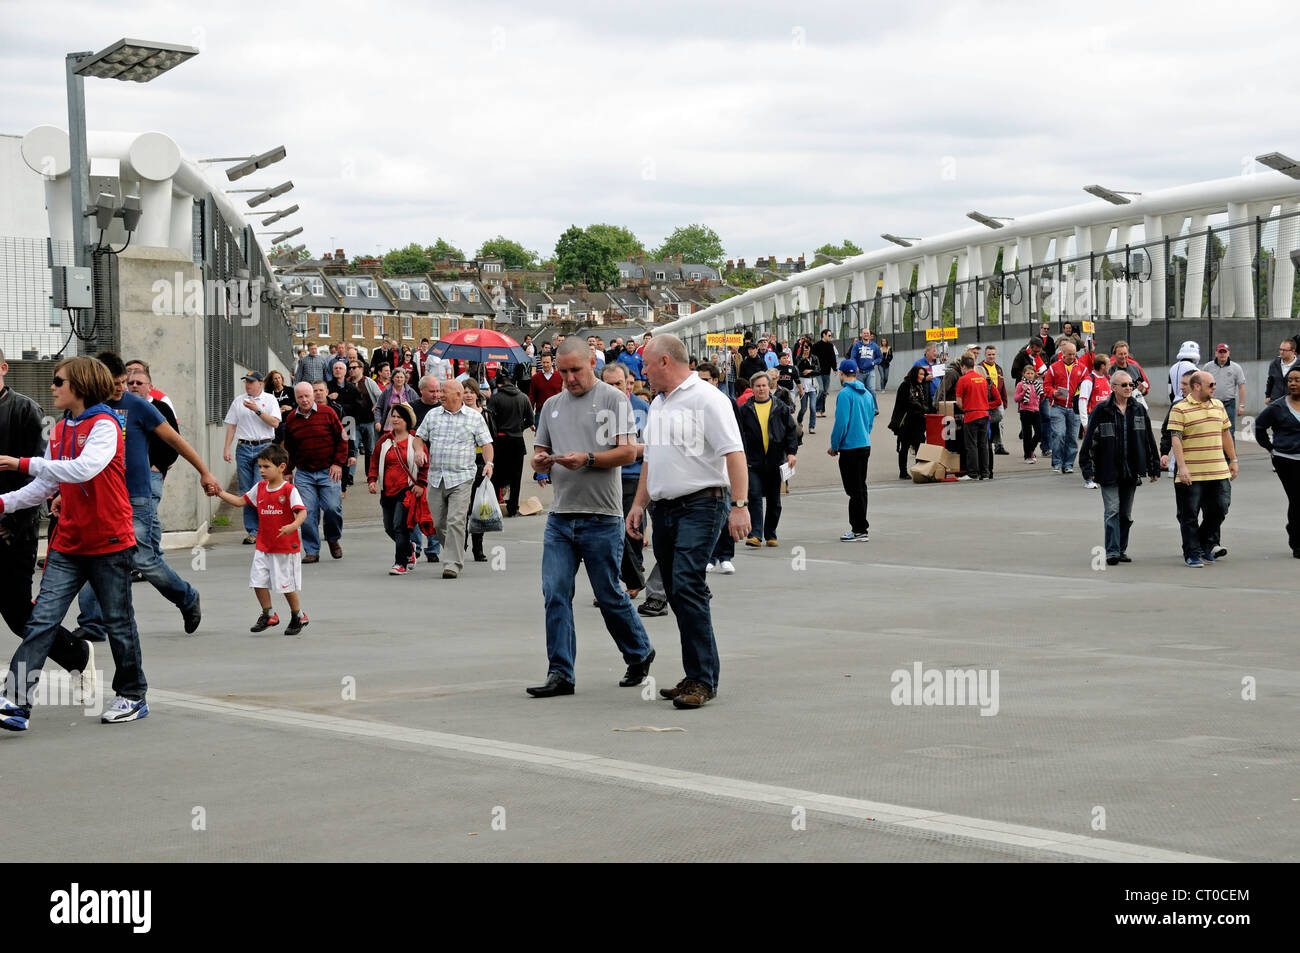 Football fans, North Bridge, Emirates Stadium, London Borough of Islington, England, UK Stock Photo